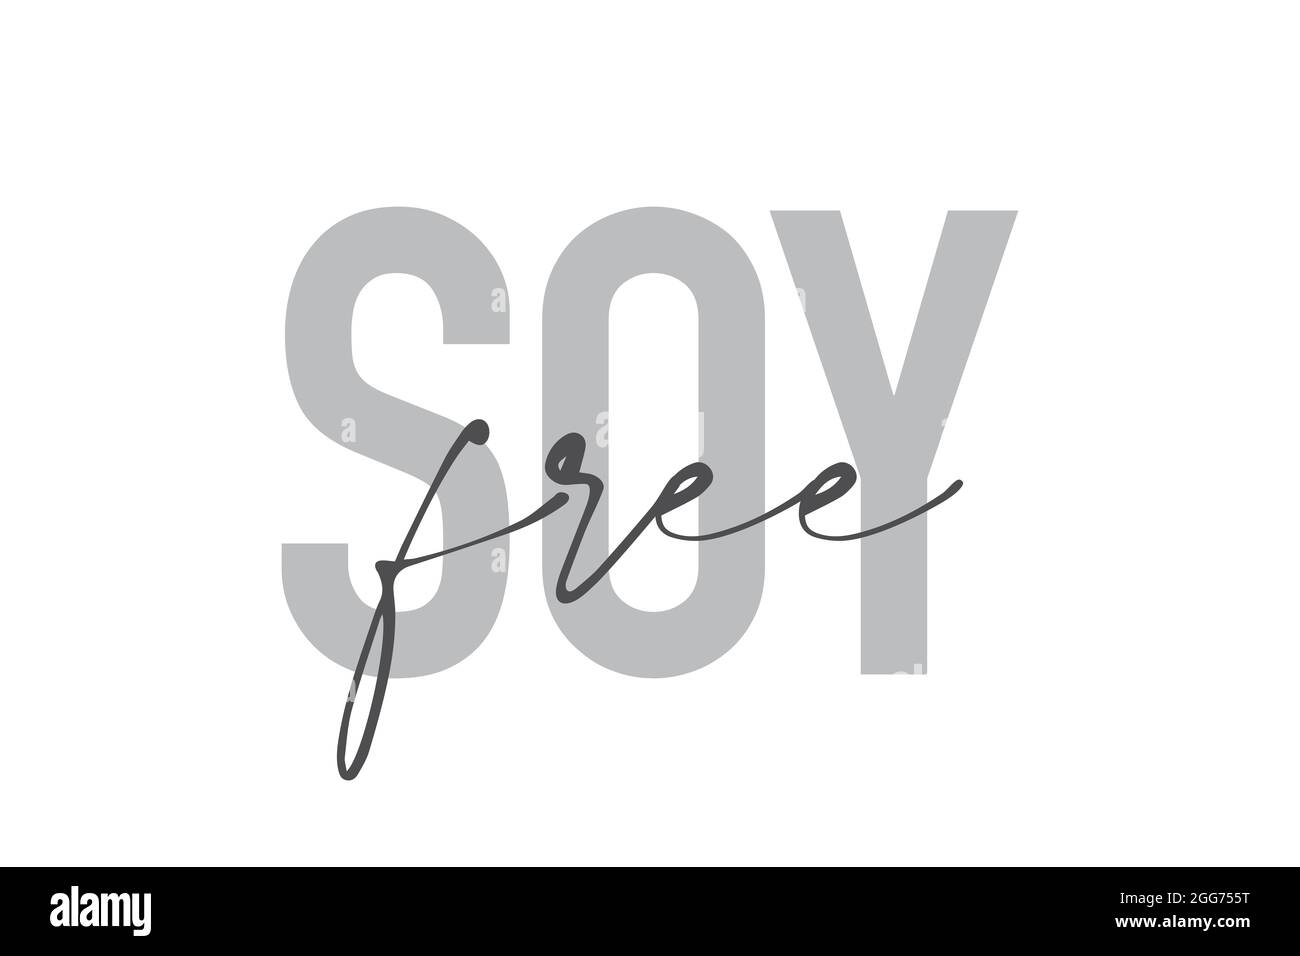 Modernes, schlichtes, minimalistisches typografisches Design eines Sprichwort „Soy Free“ in Grautönen. Coole, urbane, trendige und verspielte Grafik-Vektorgrafik mit der Hand Stockfoto